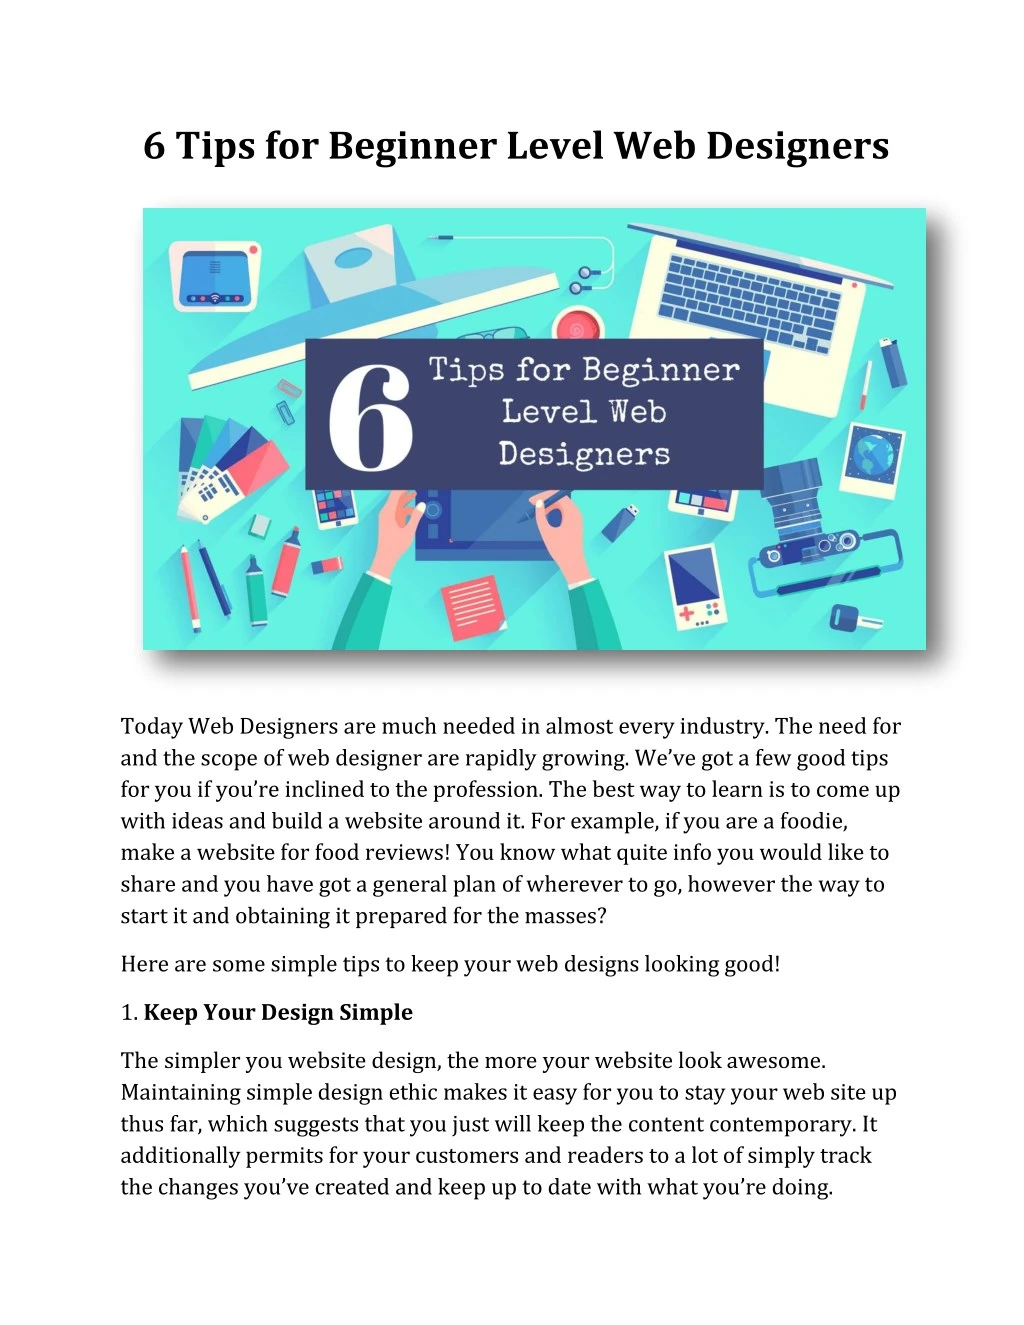 6 tips for beginner level web designers